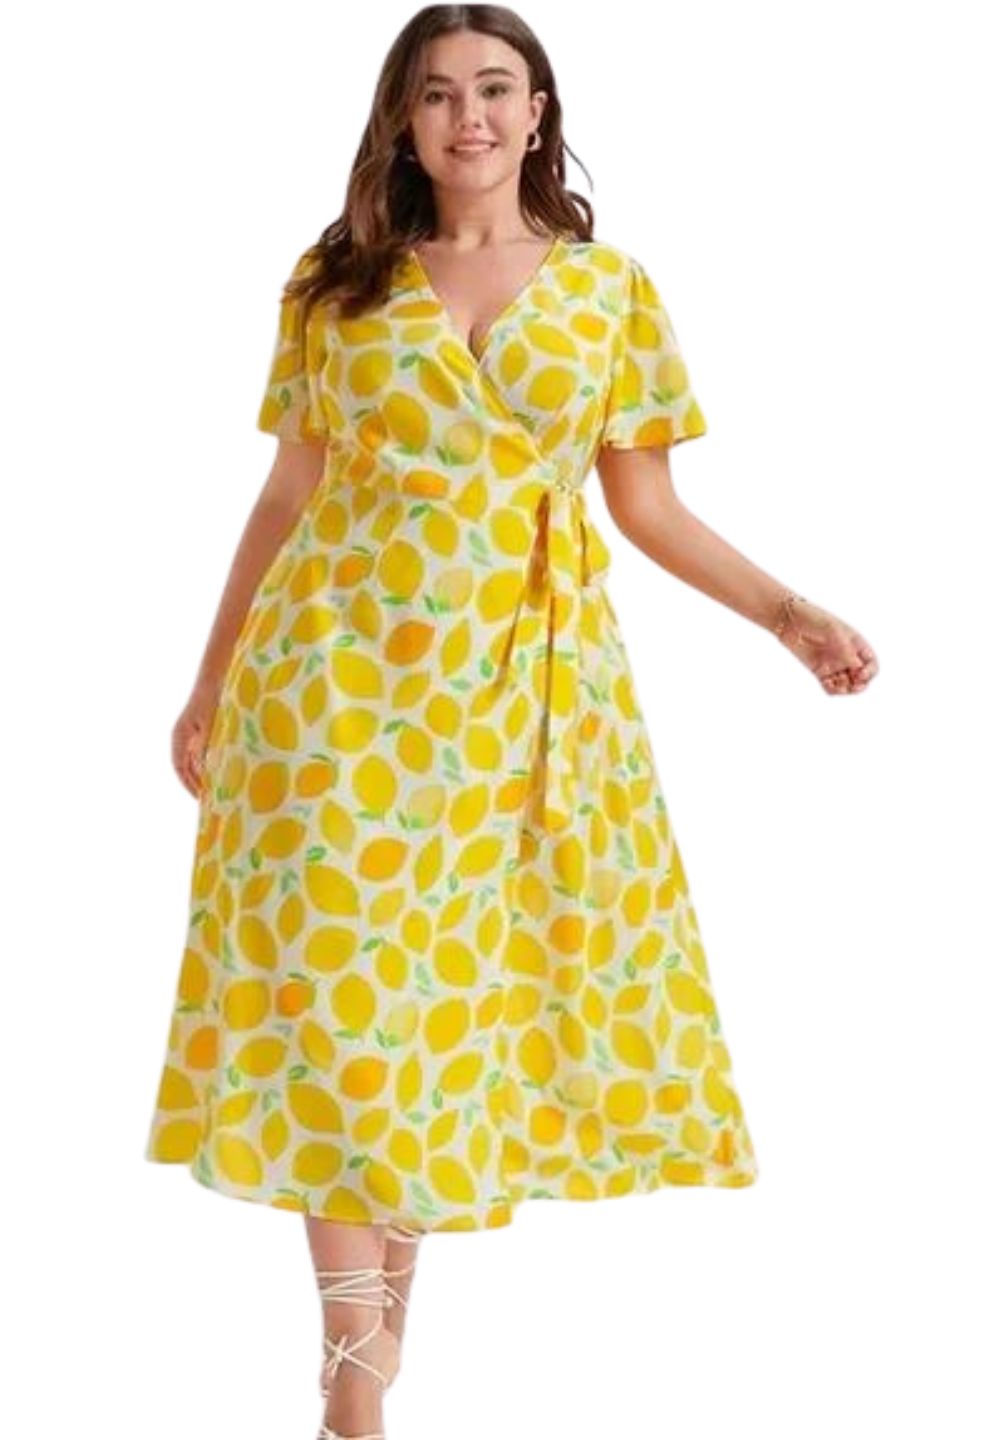 Bloomchic Lemon Print Wrap Dress, Size 26